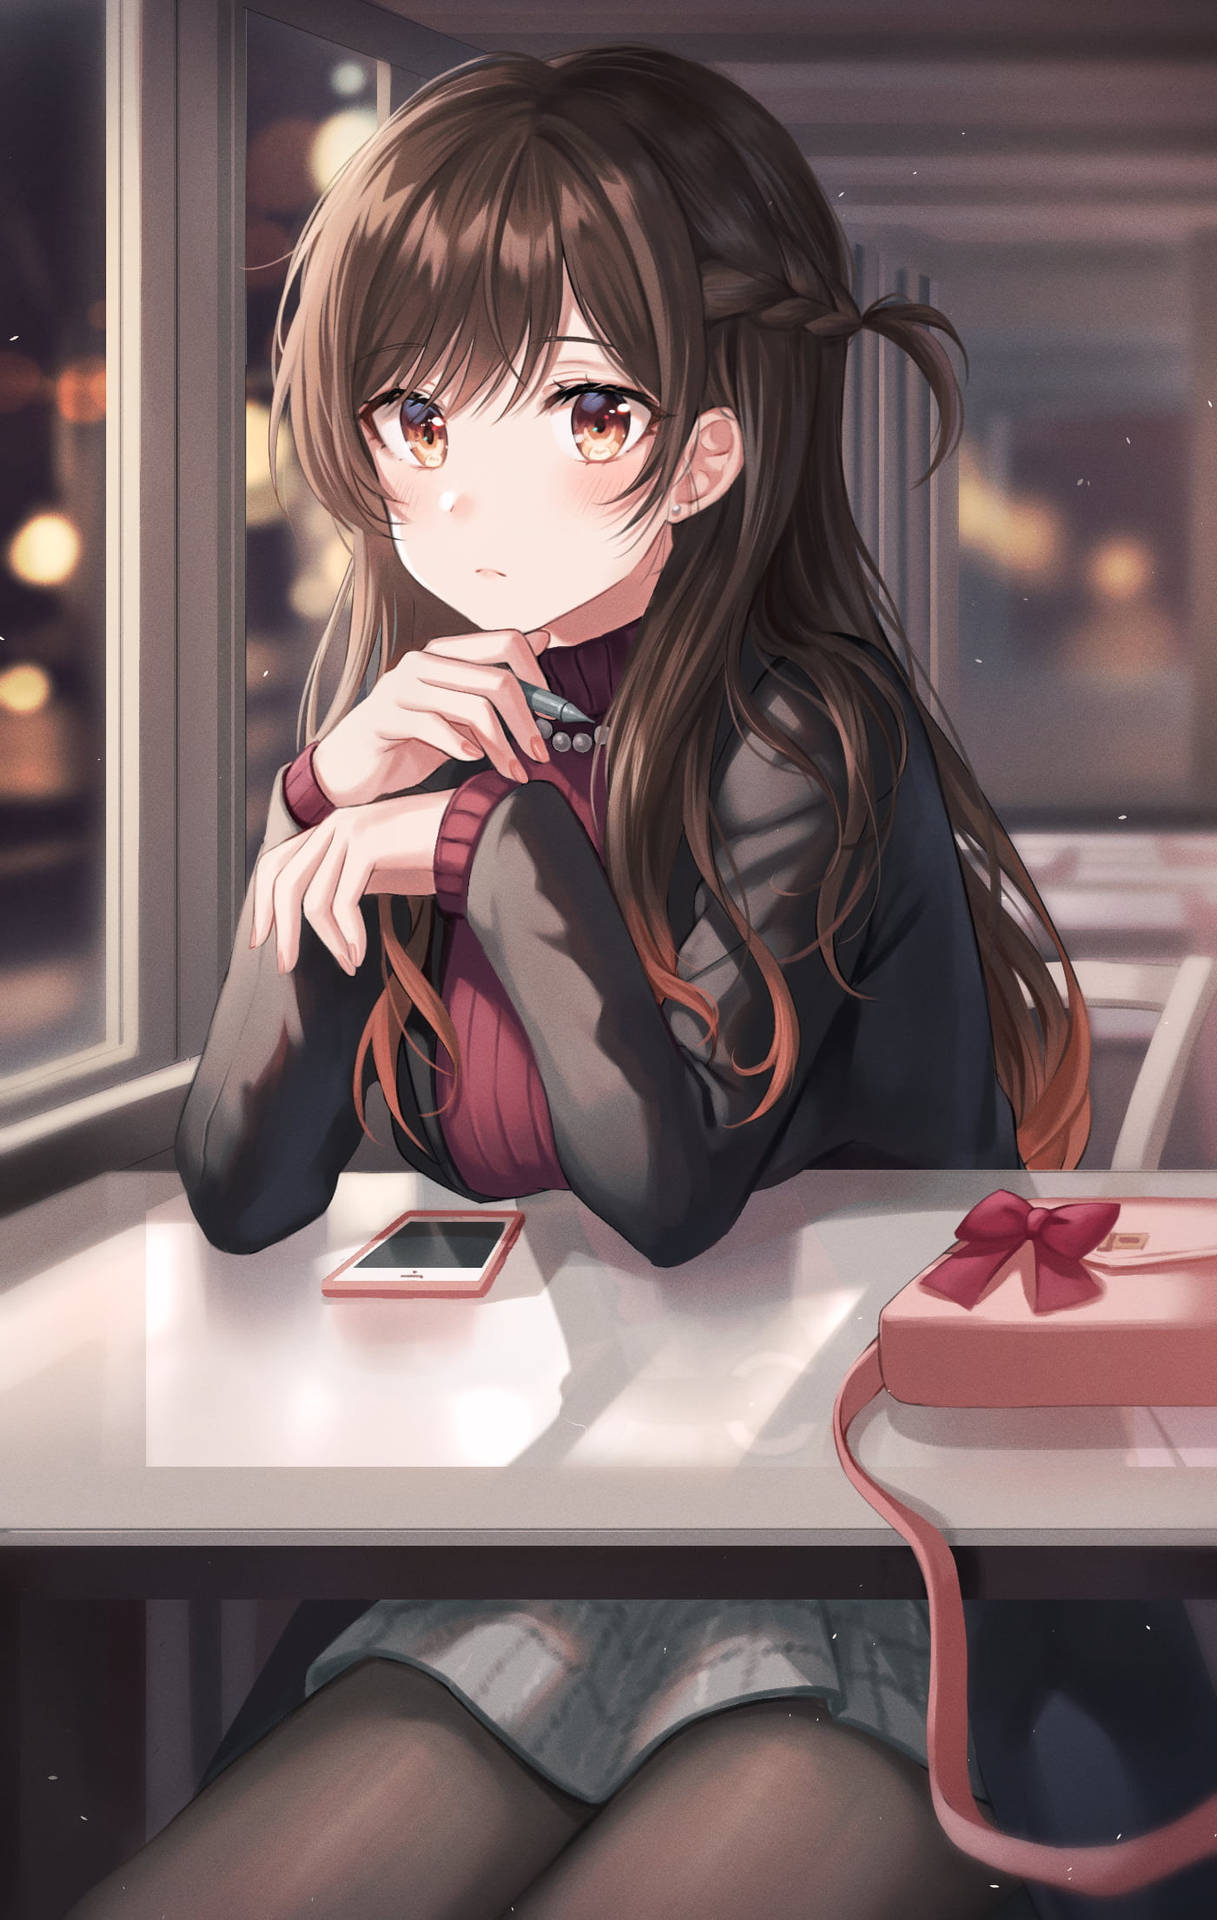 Rent A Girlfriend Cute Anime Chizaru Background